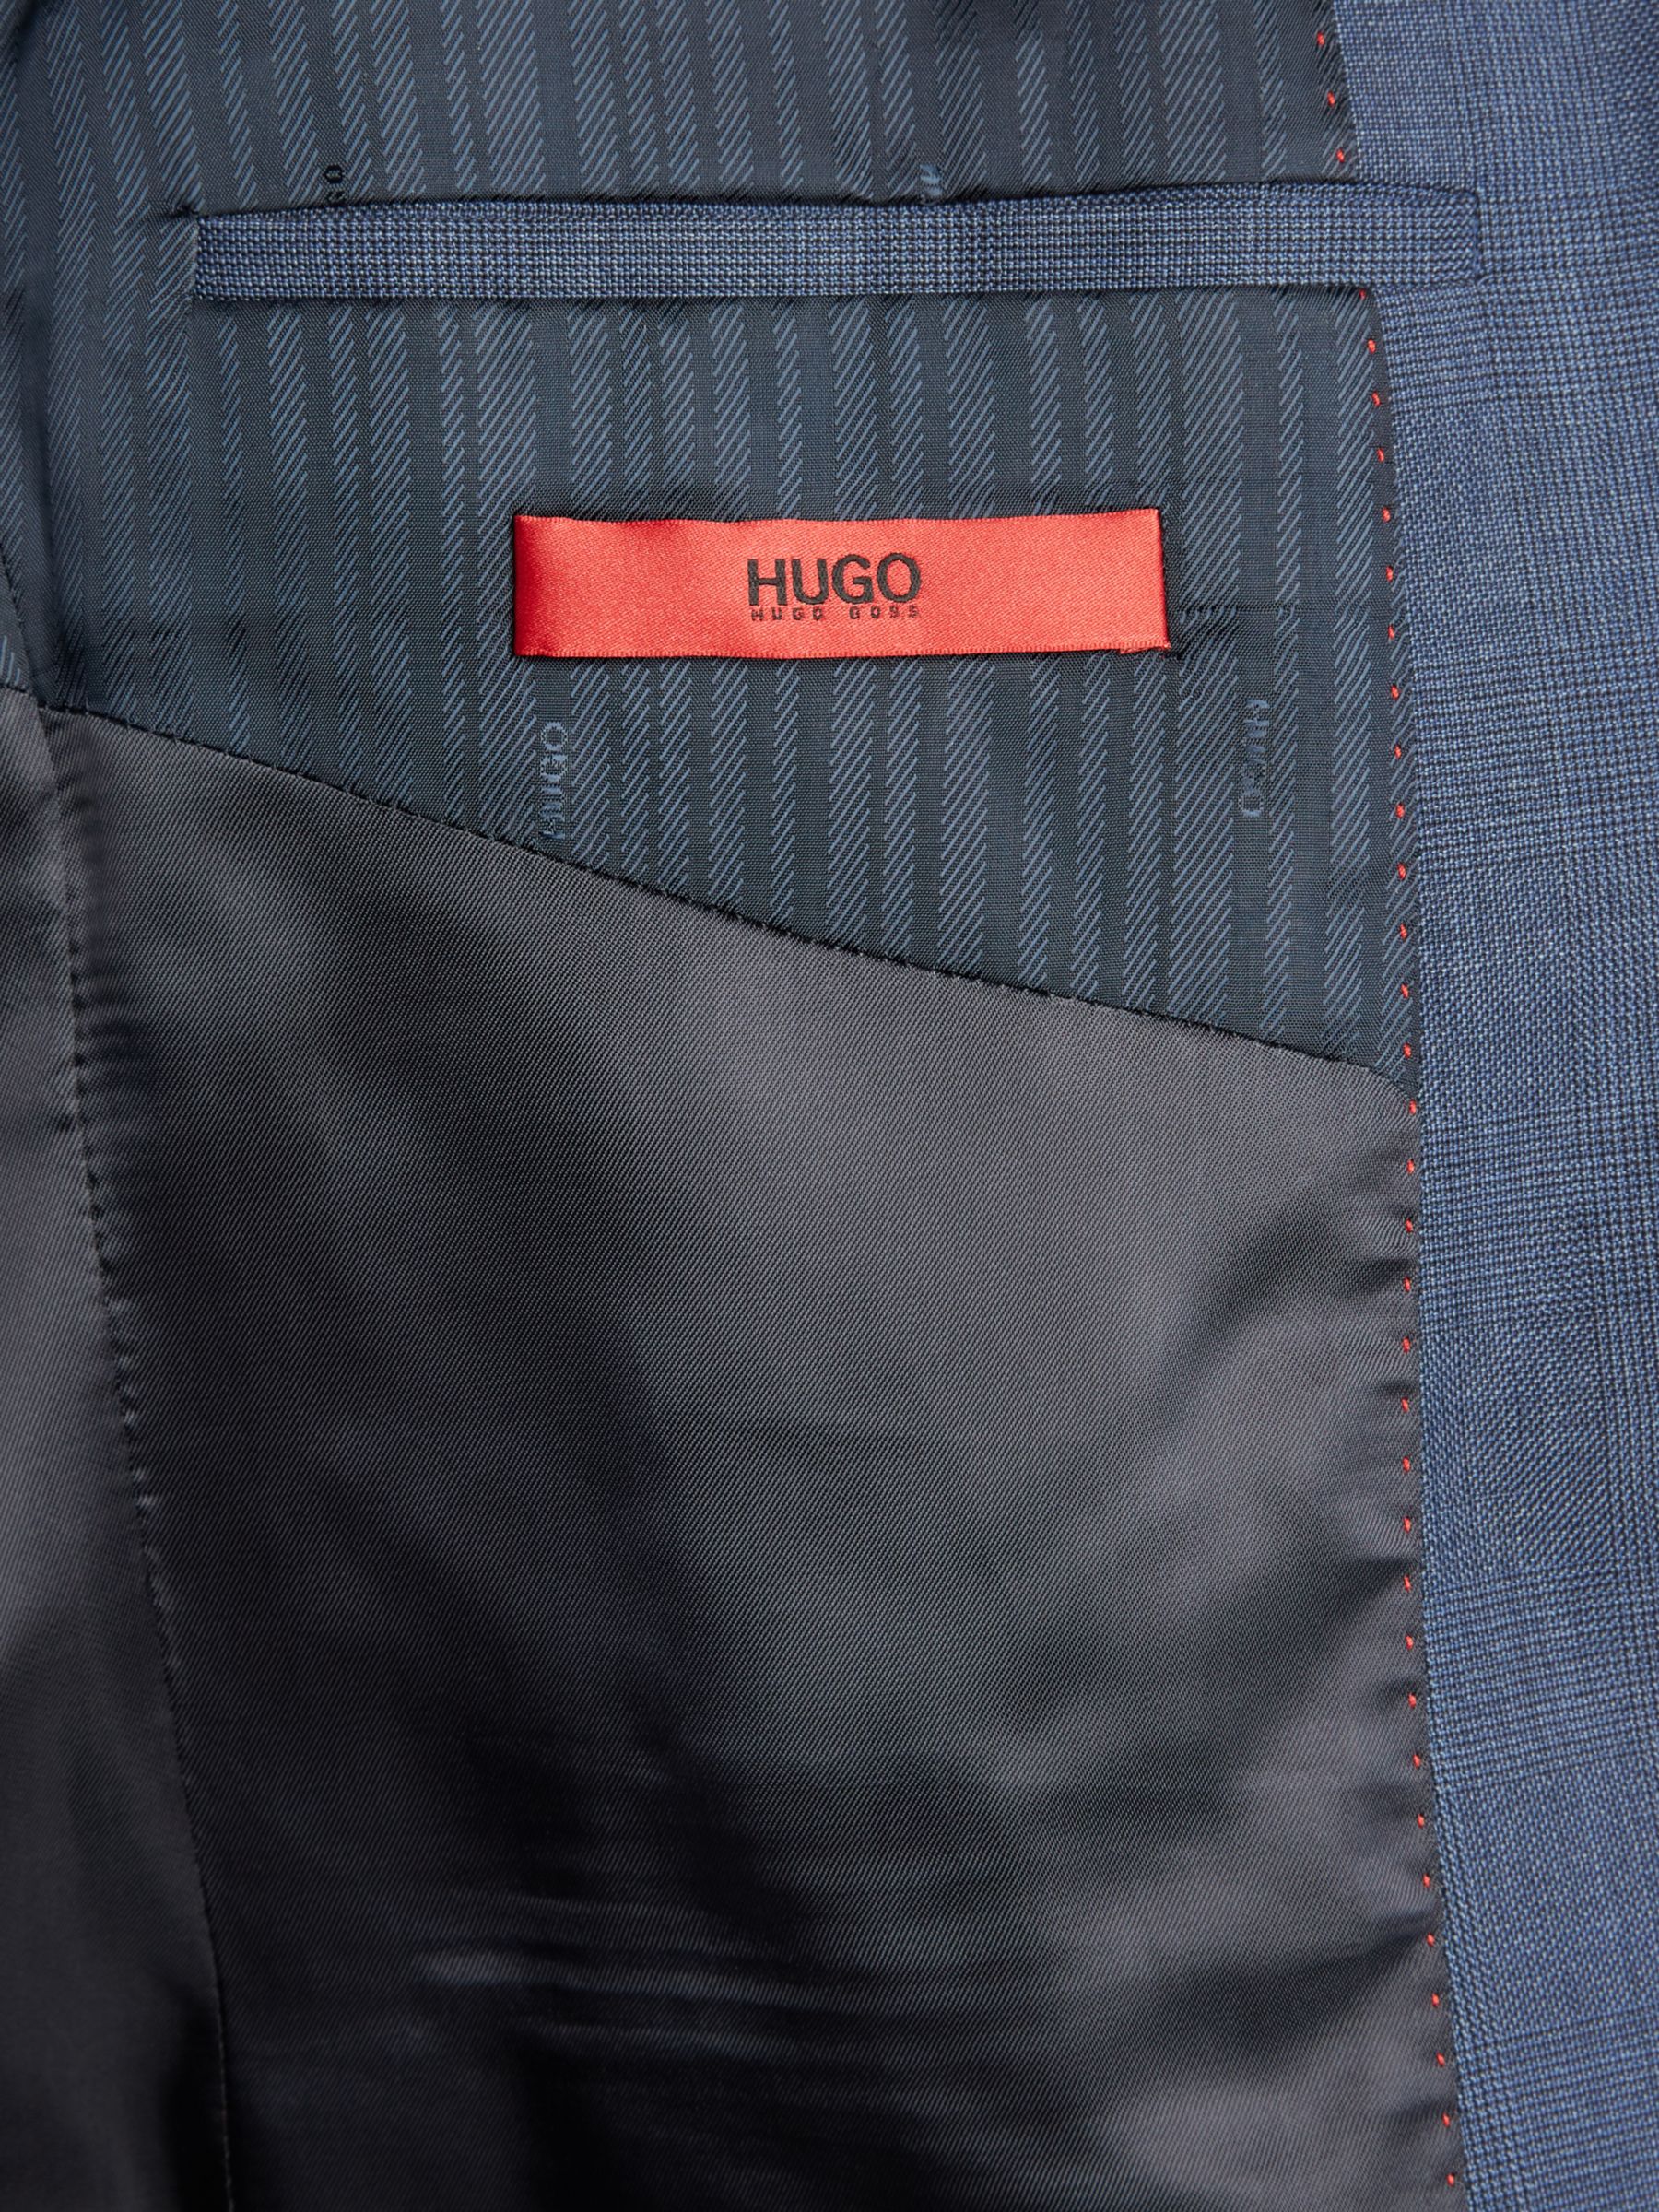 hugo boss henry suit